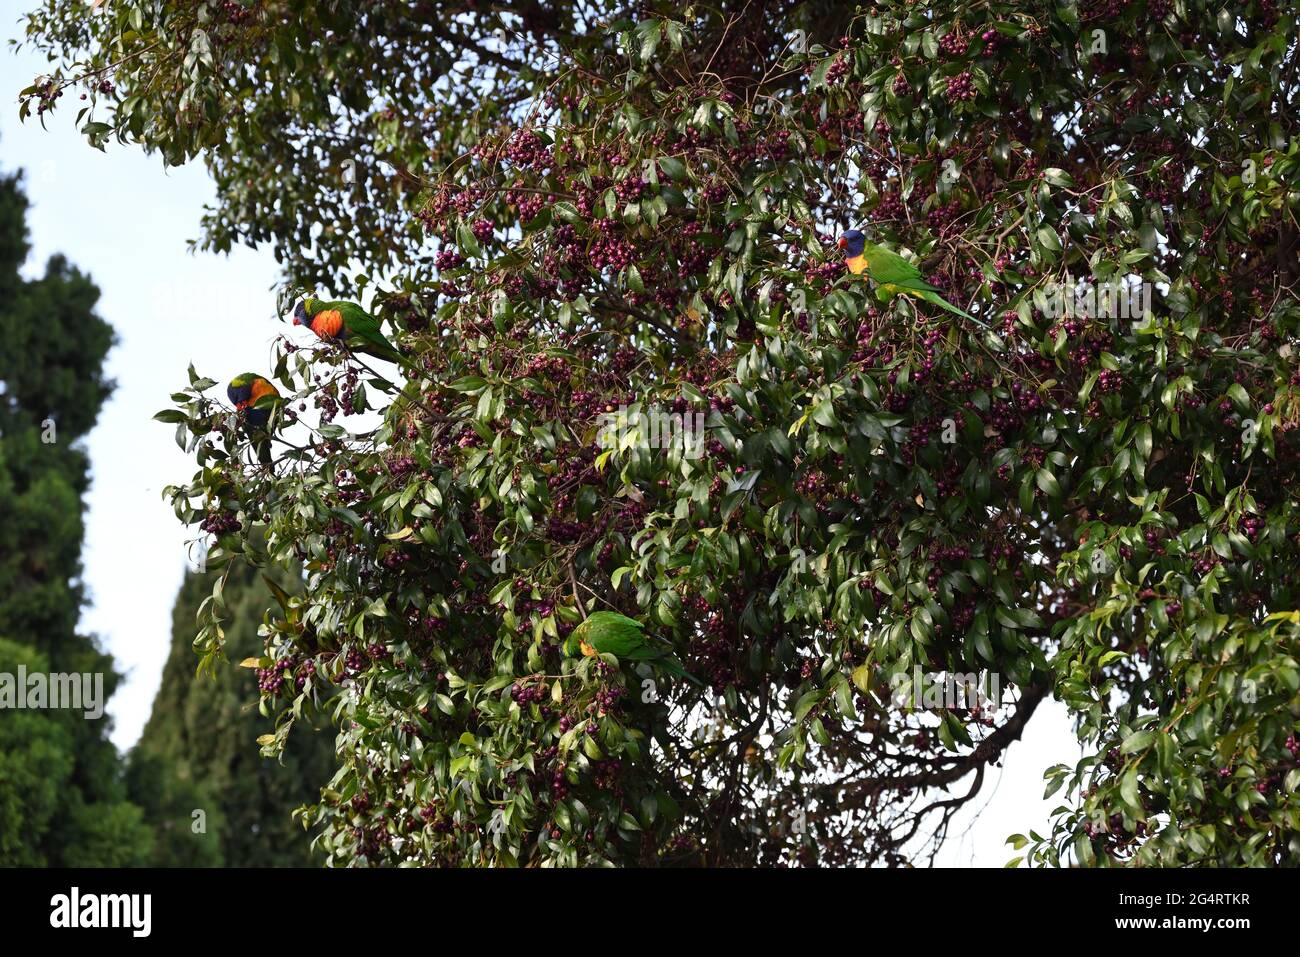 Vier Regenbogenlorikeets in einem Baum, der mit Beeren gefüllt ist Stockfoto